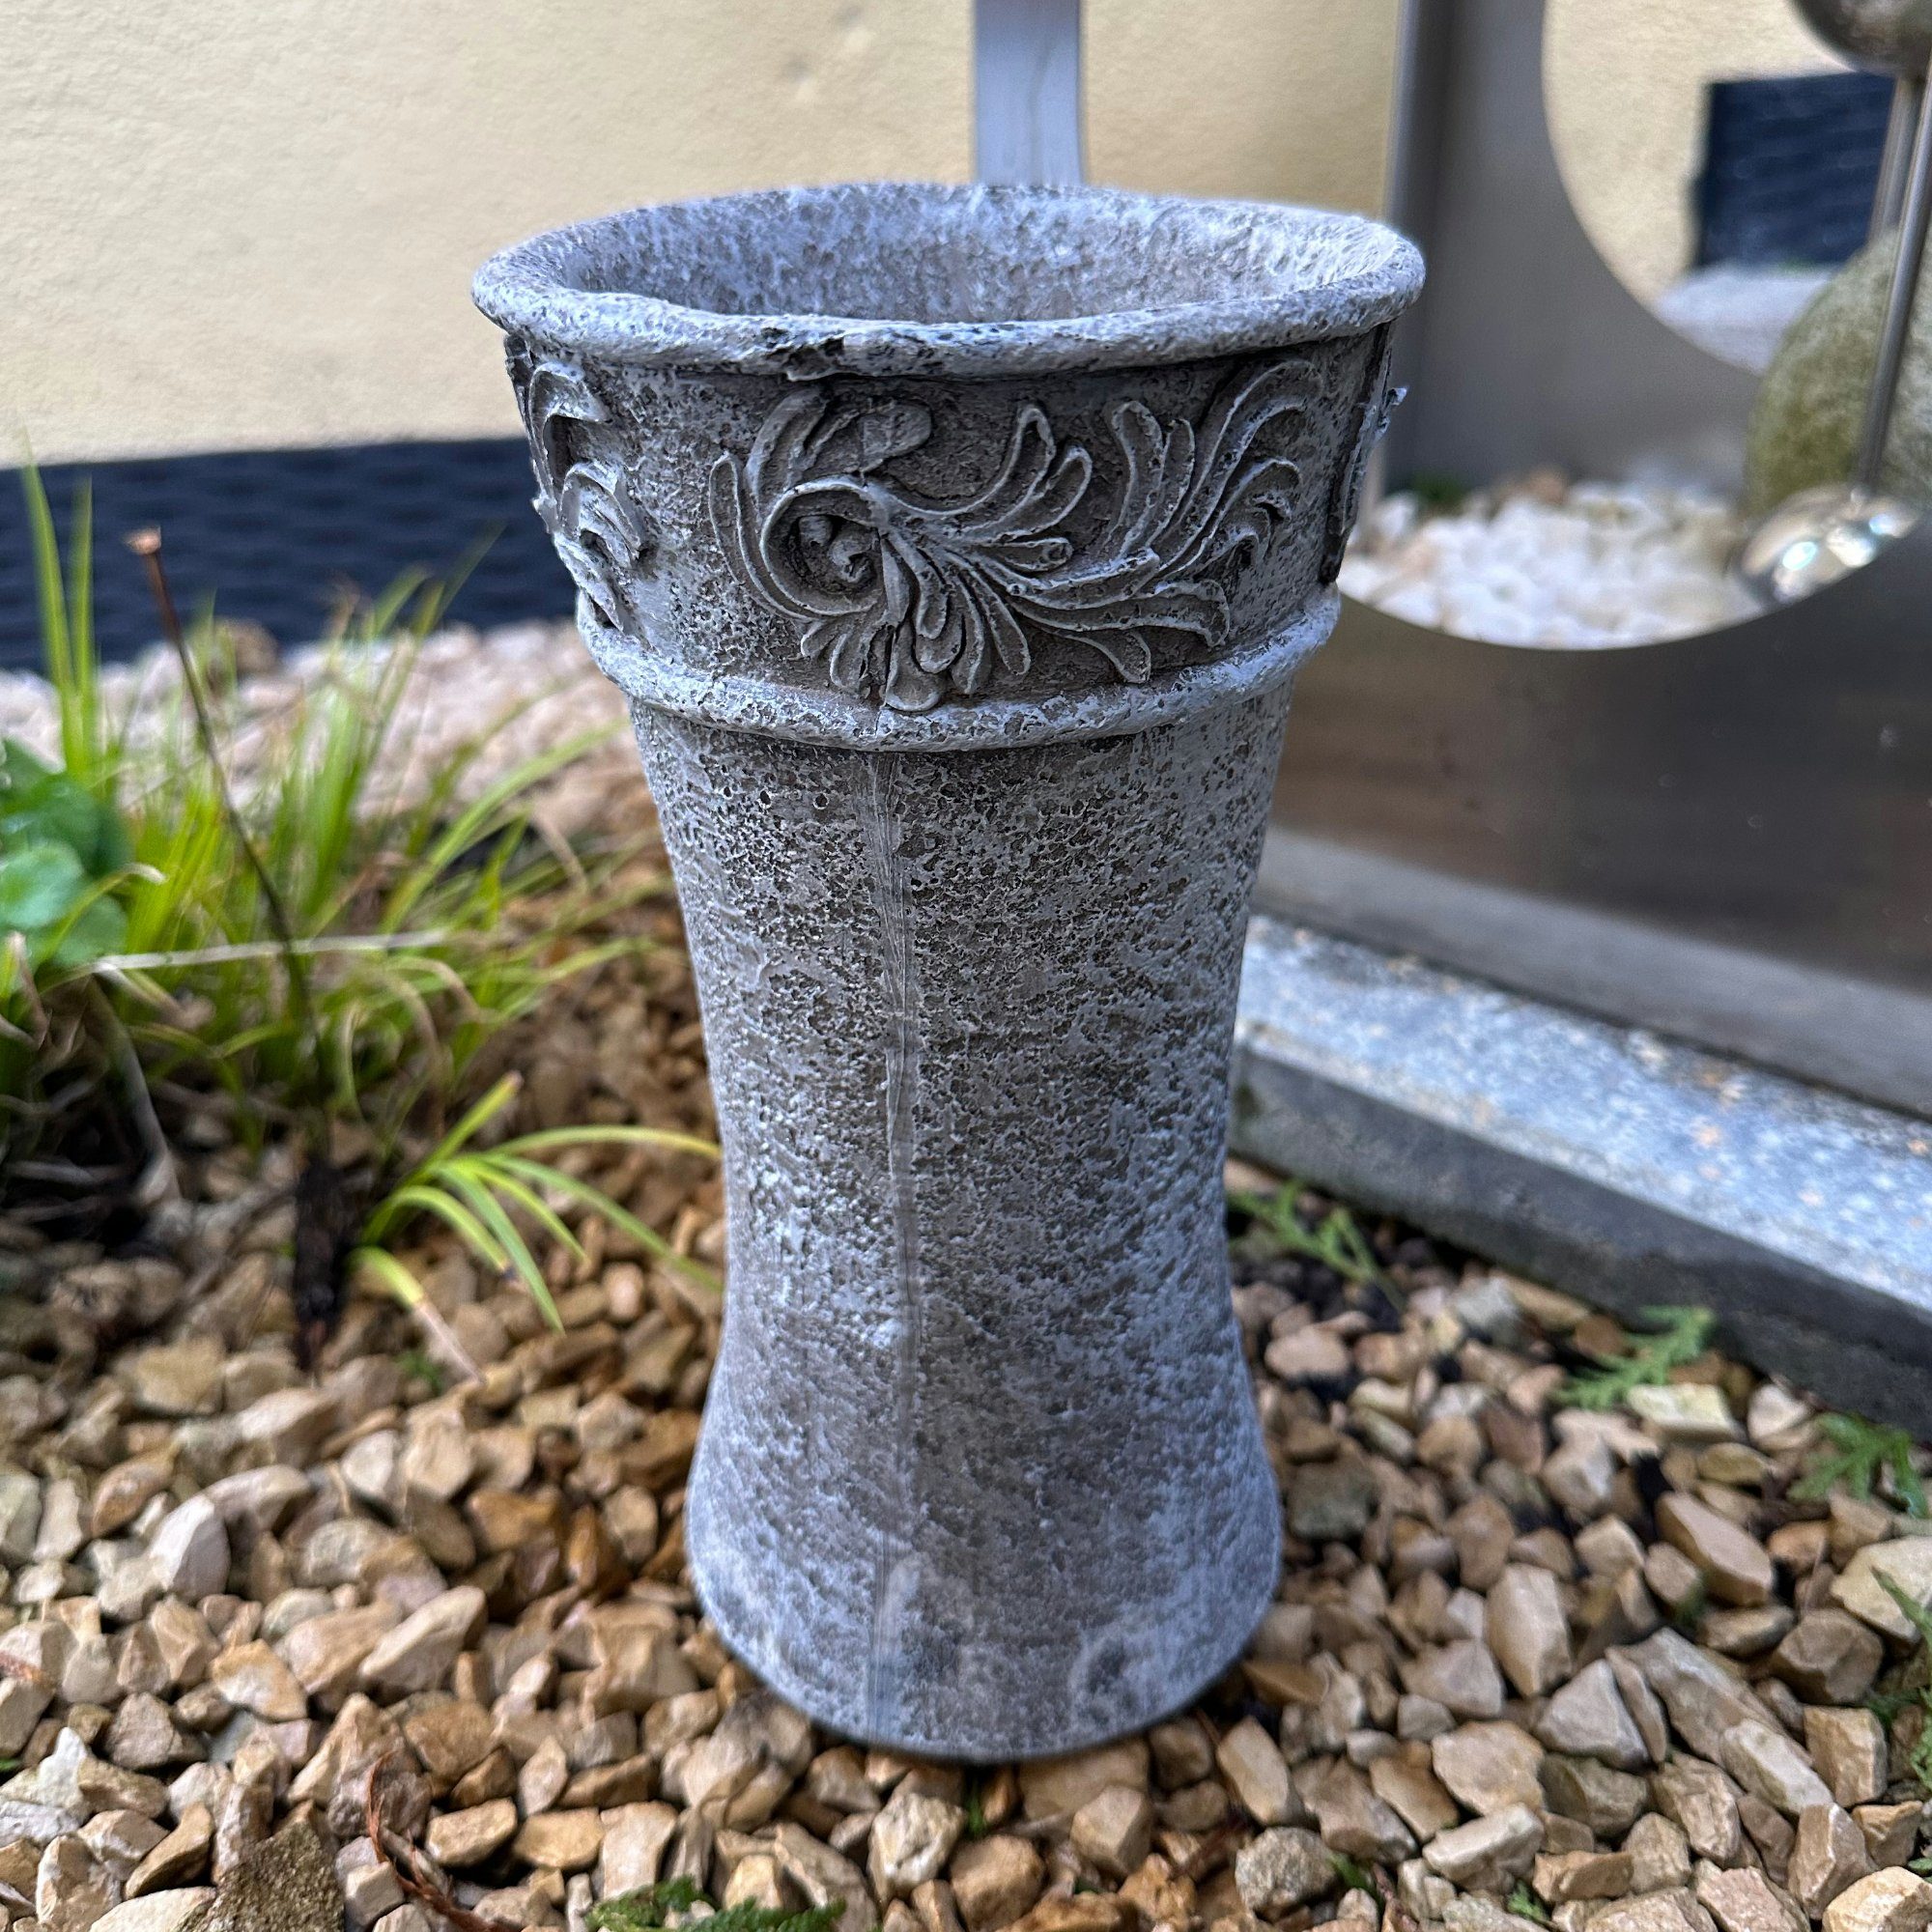 Radami Gartenfigur Grabvase Vase 3D Ranke für Grab Gedenkstein Grabschmuck Grabdeko